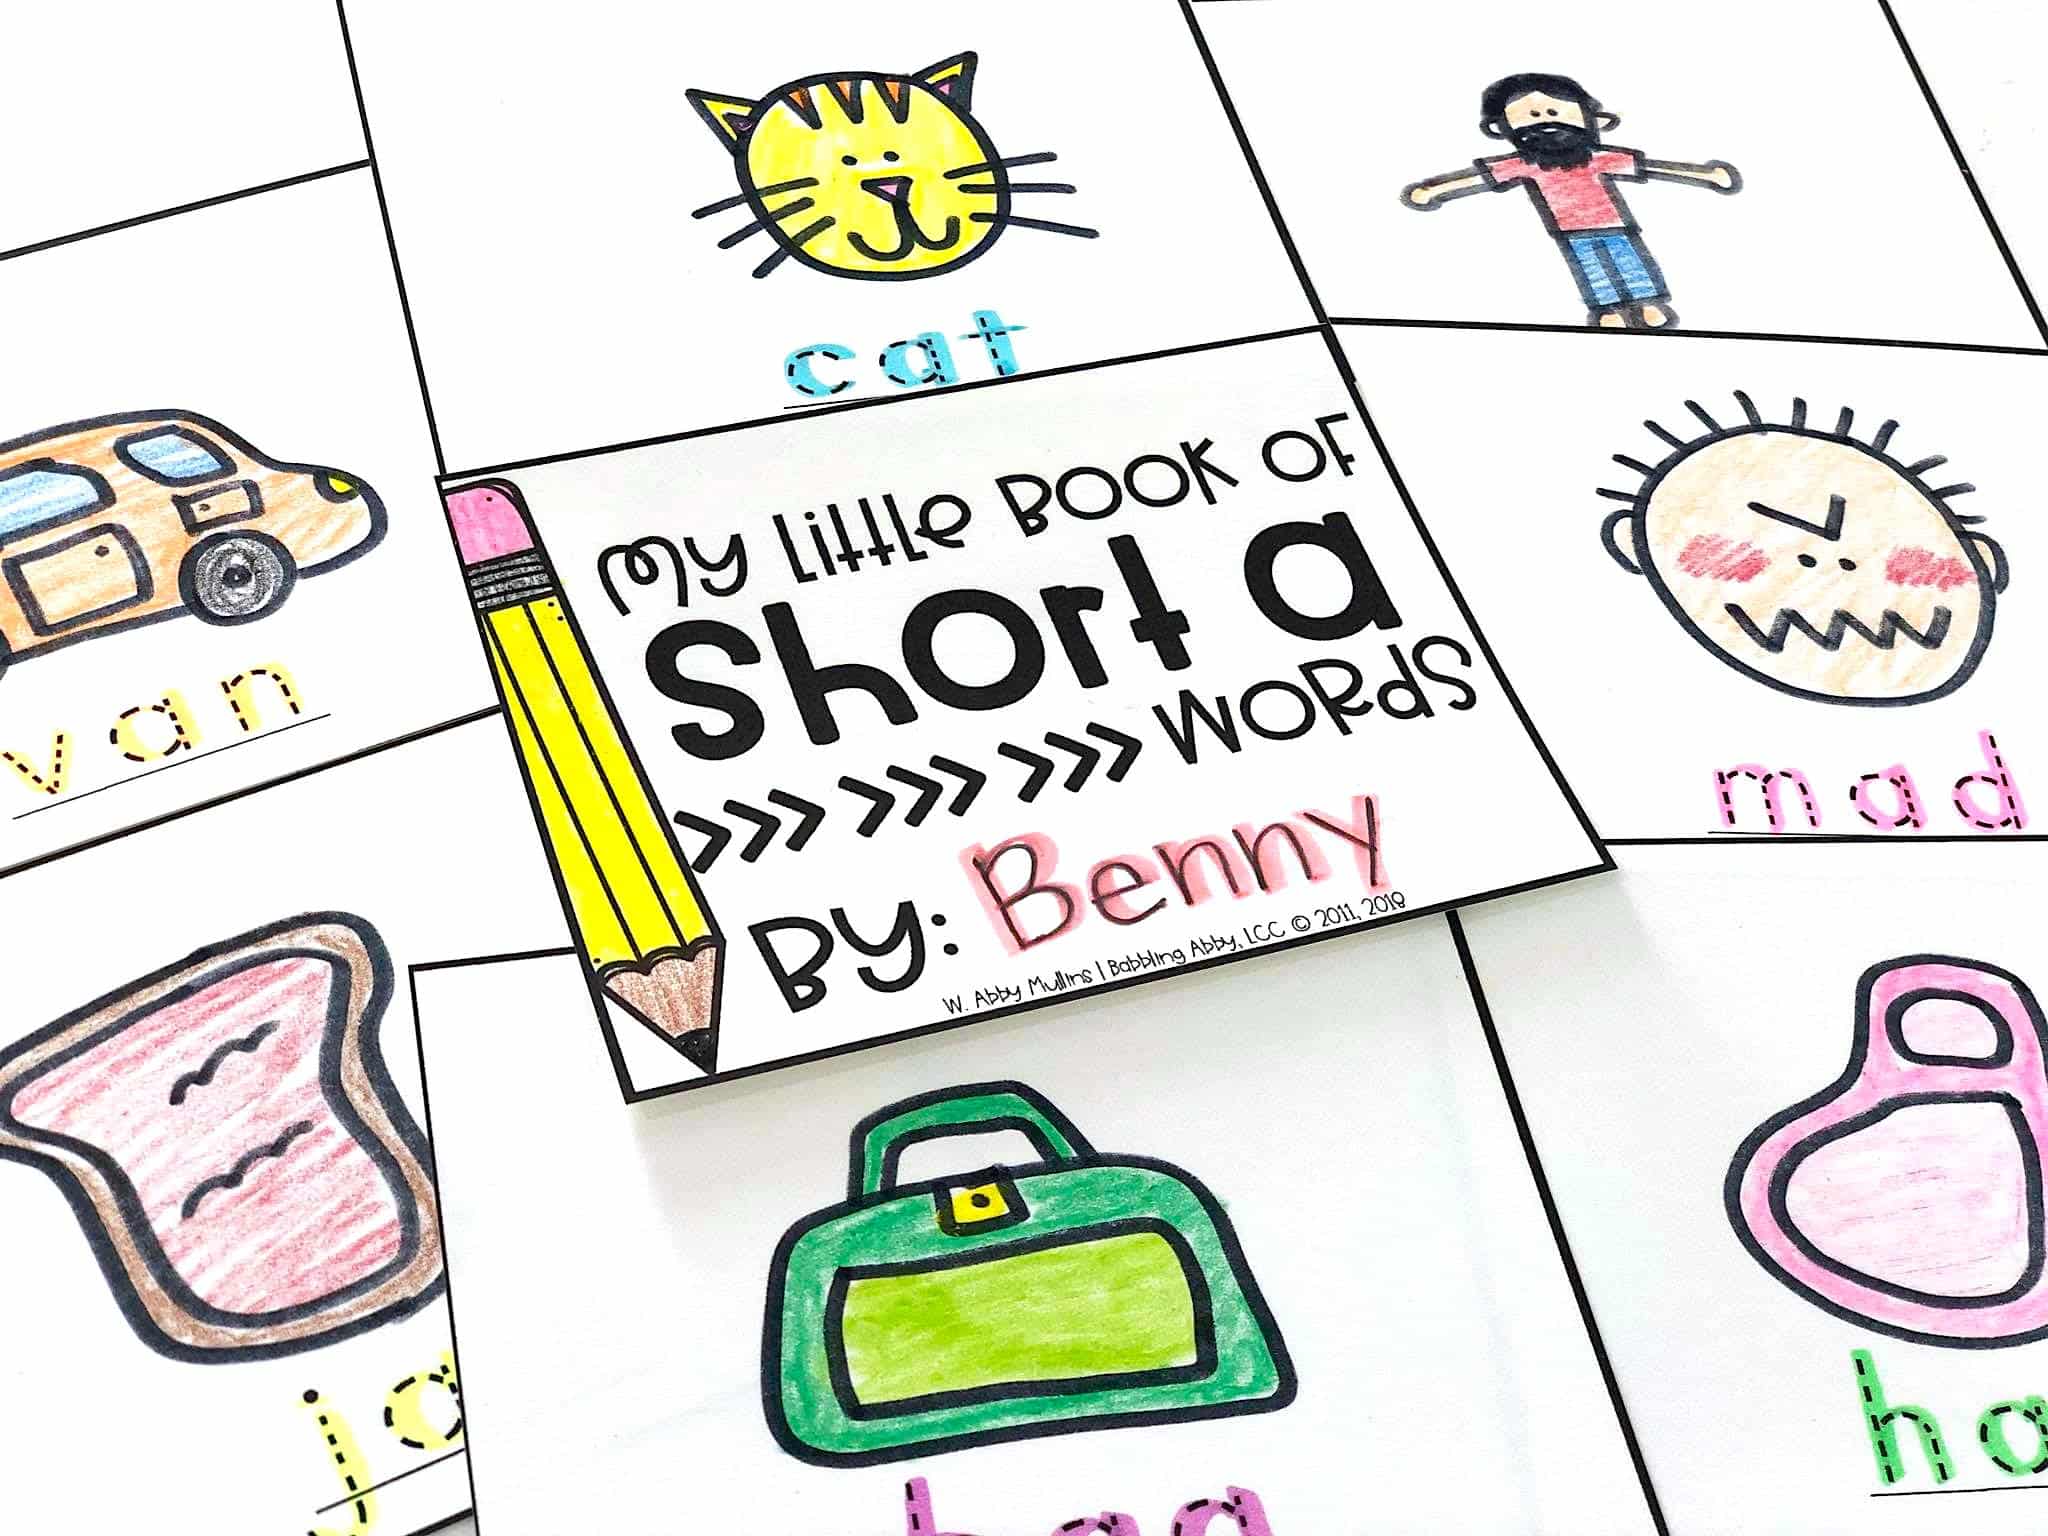 Short vowel phonics activities for kindergarten and first grade students.